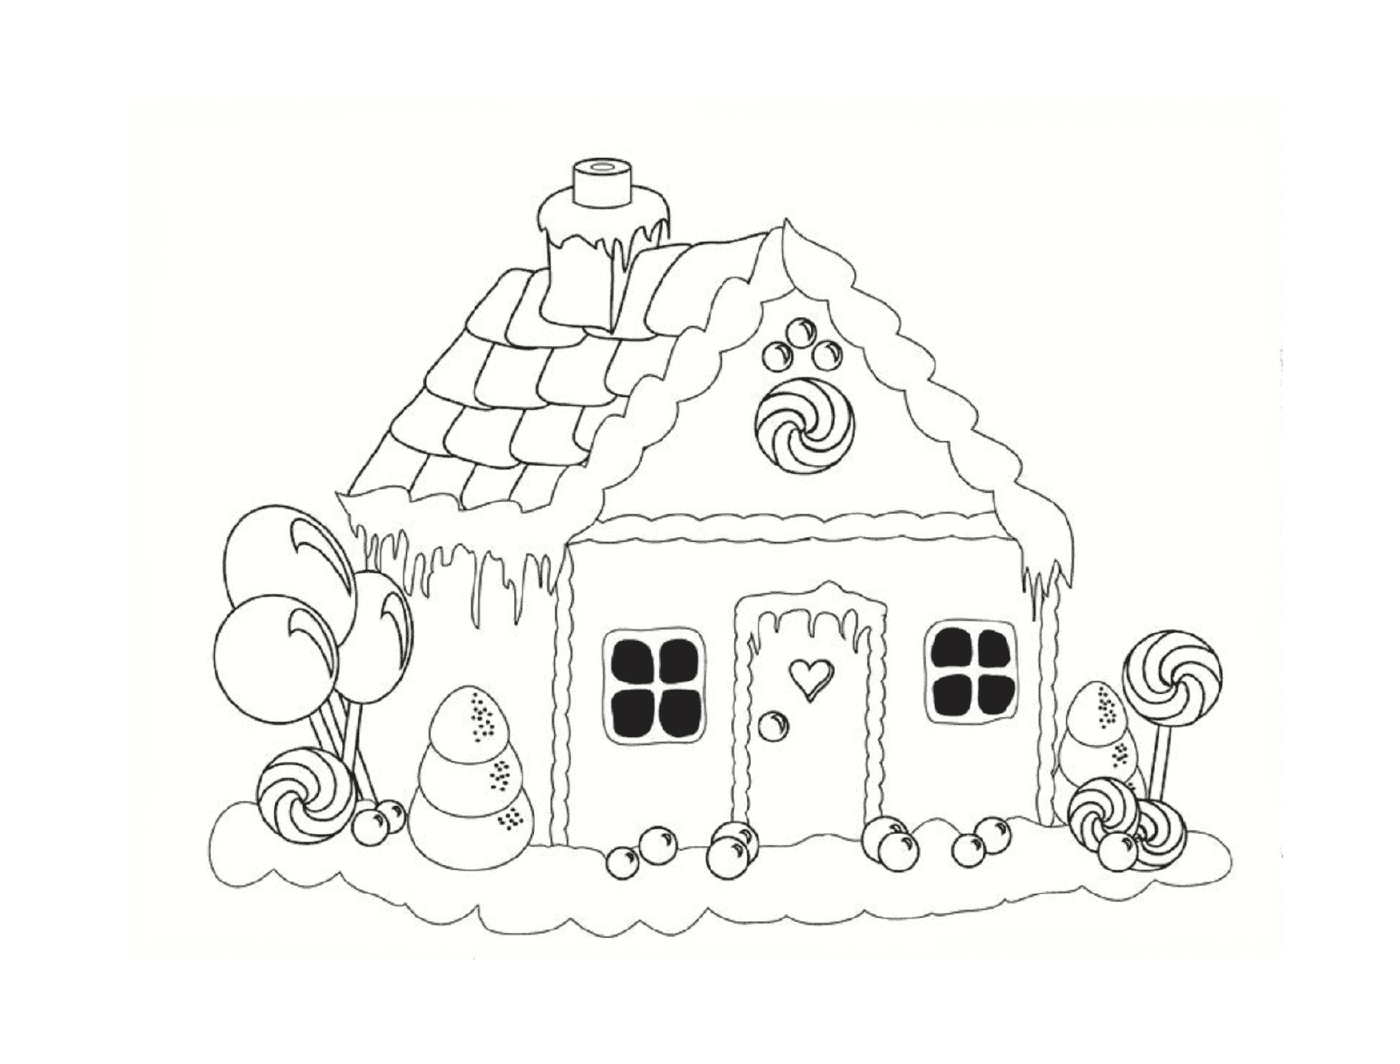  Casa di pan di zenzero nevoso 